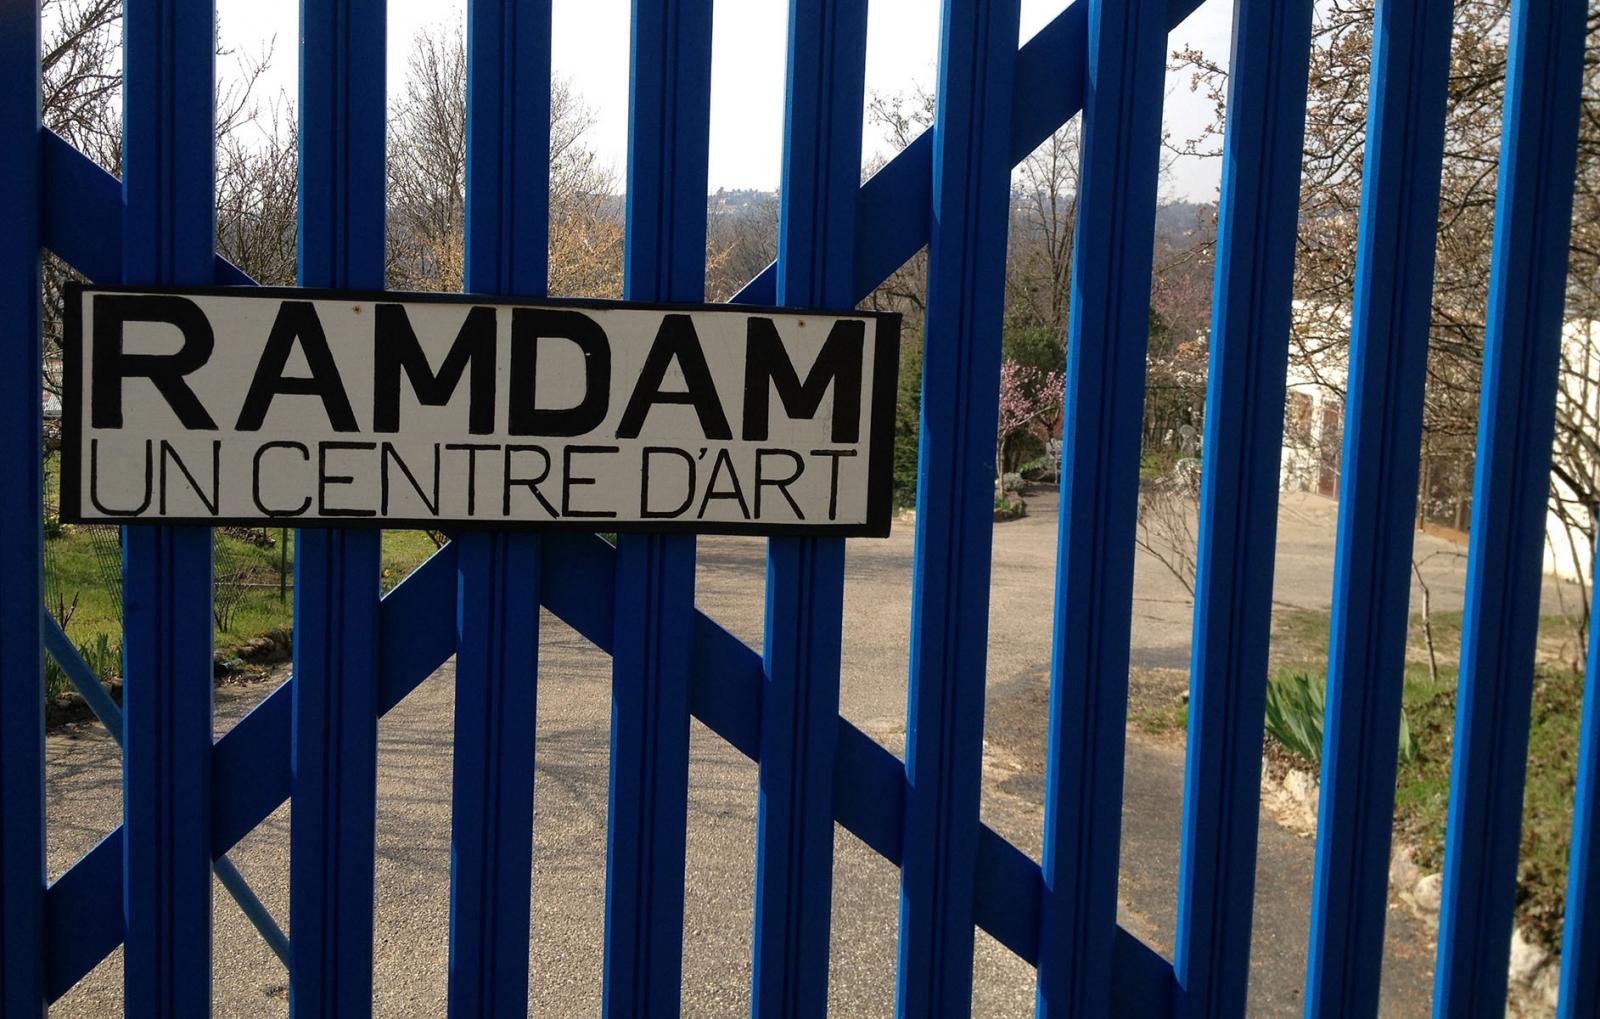 RAMDAM, un centre d'art a pour objectif de favoriser le travail des artistes et le développement de la création et de la recherche artistique contemporaine.